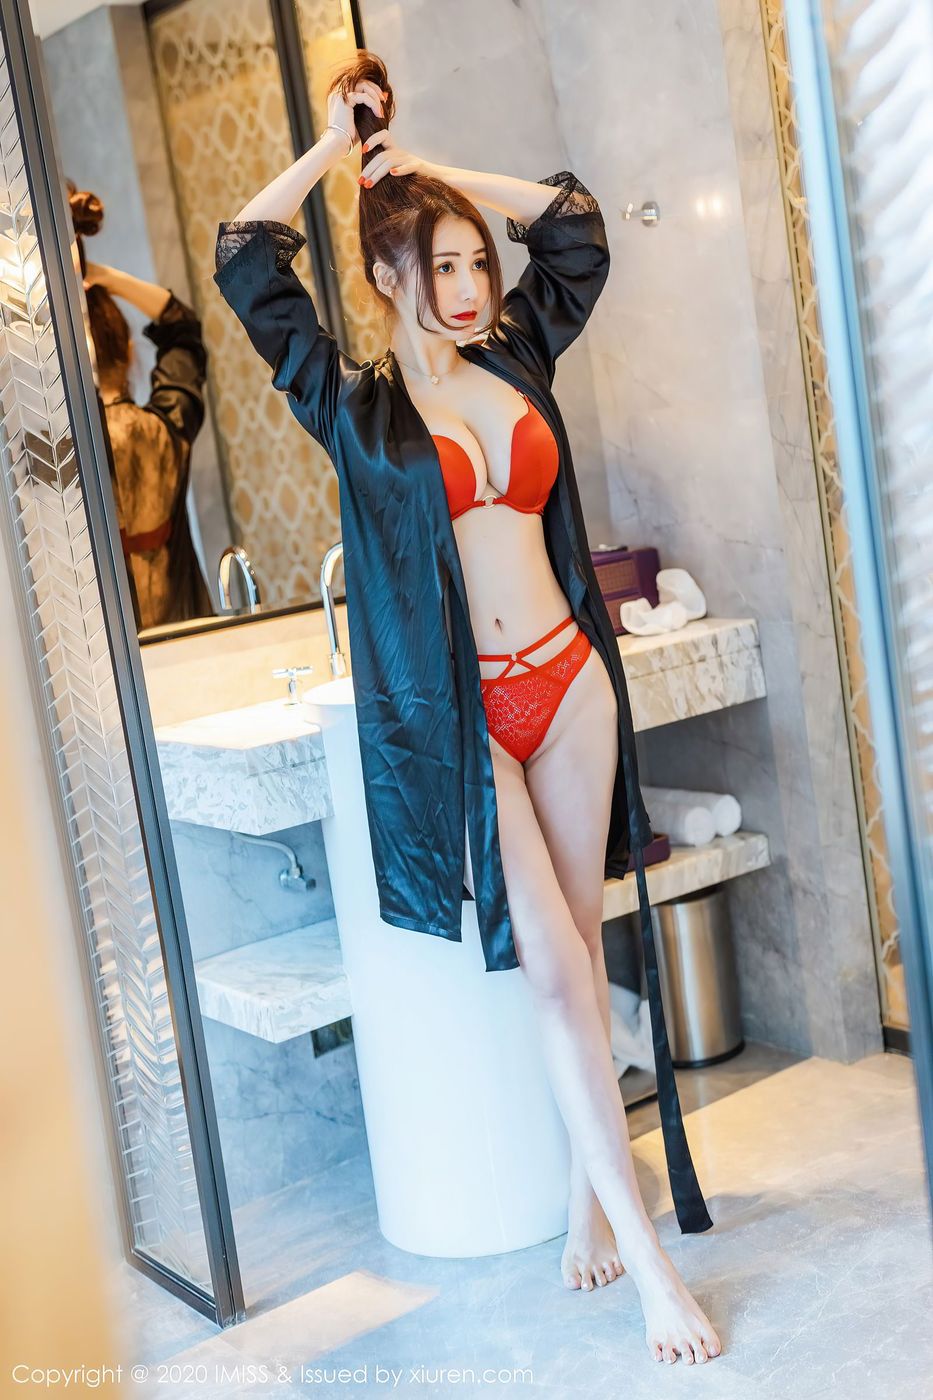 美女模特Evon陈赞之丰满身材熟女气息人间胸器套图